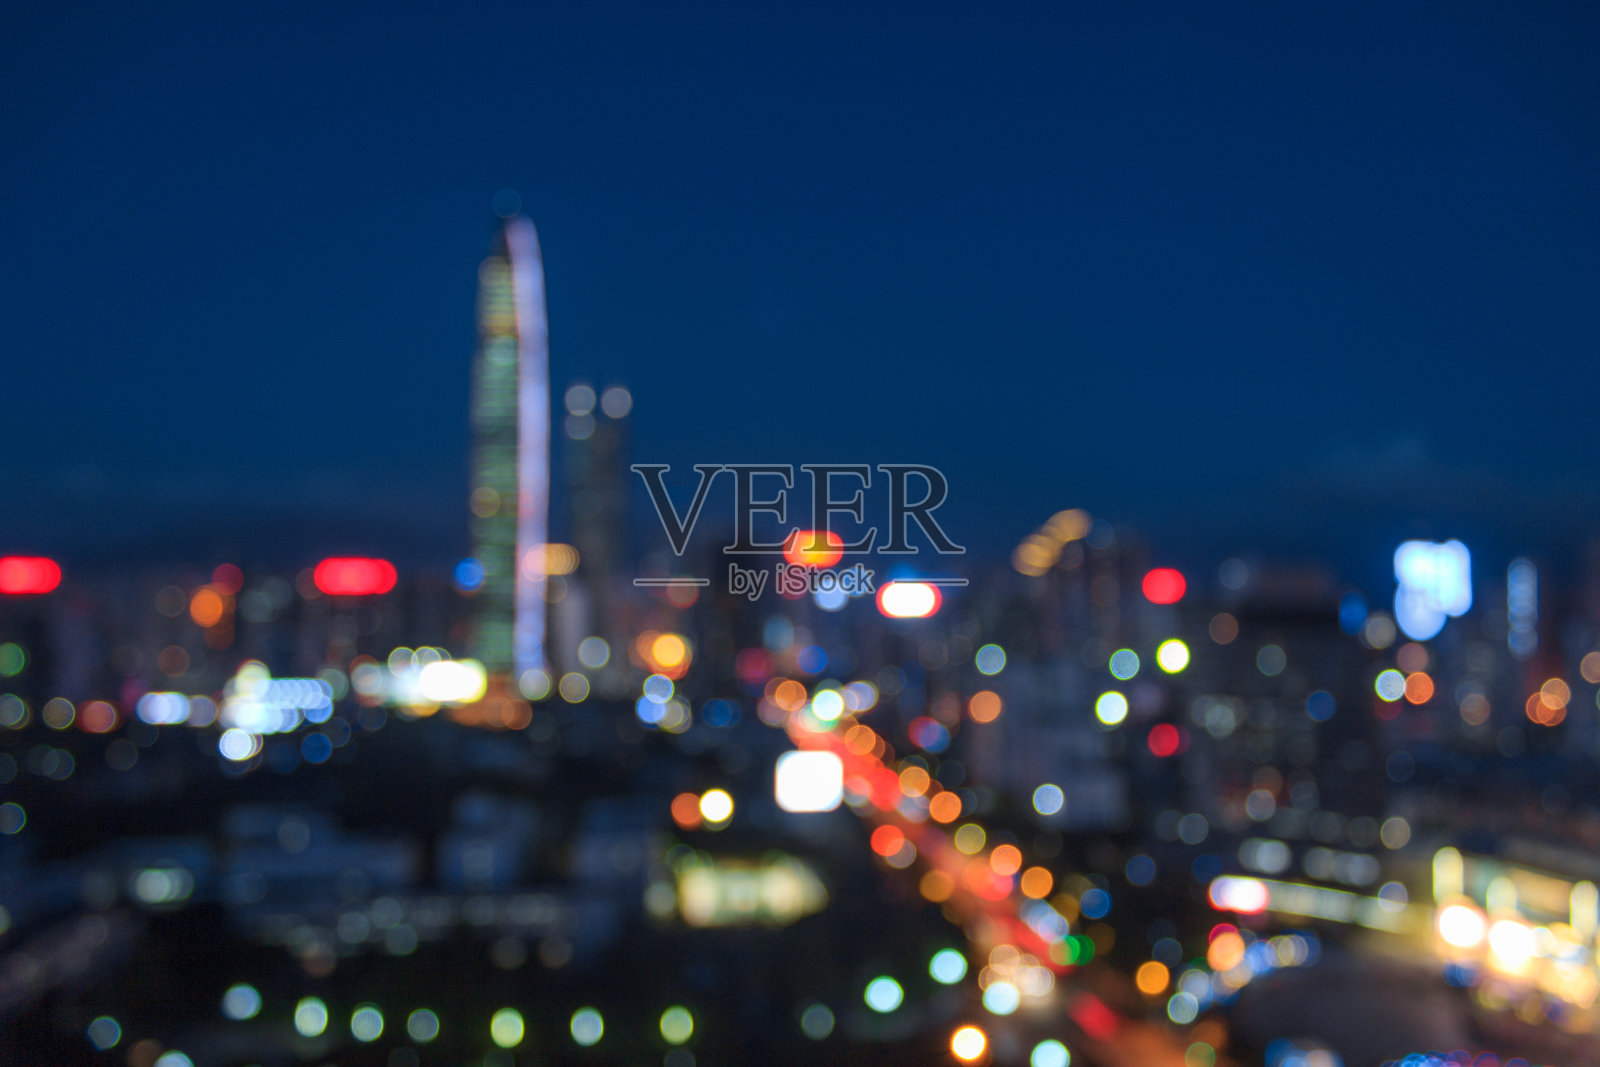 深圳市中心摩天大楼的天际线照片摄影图片